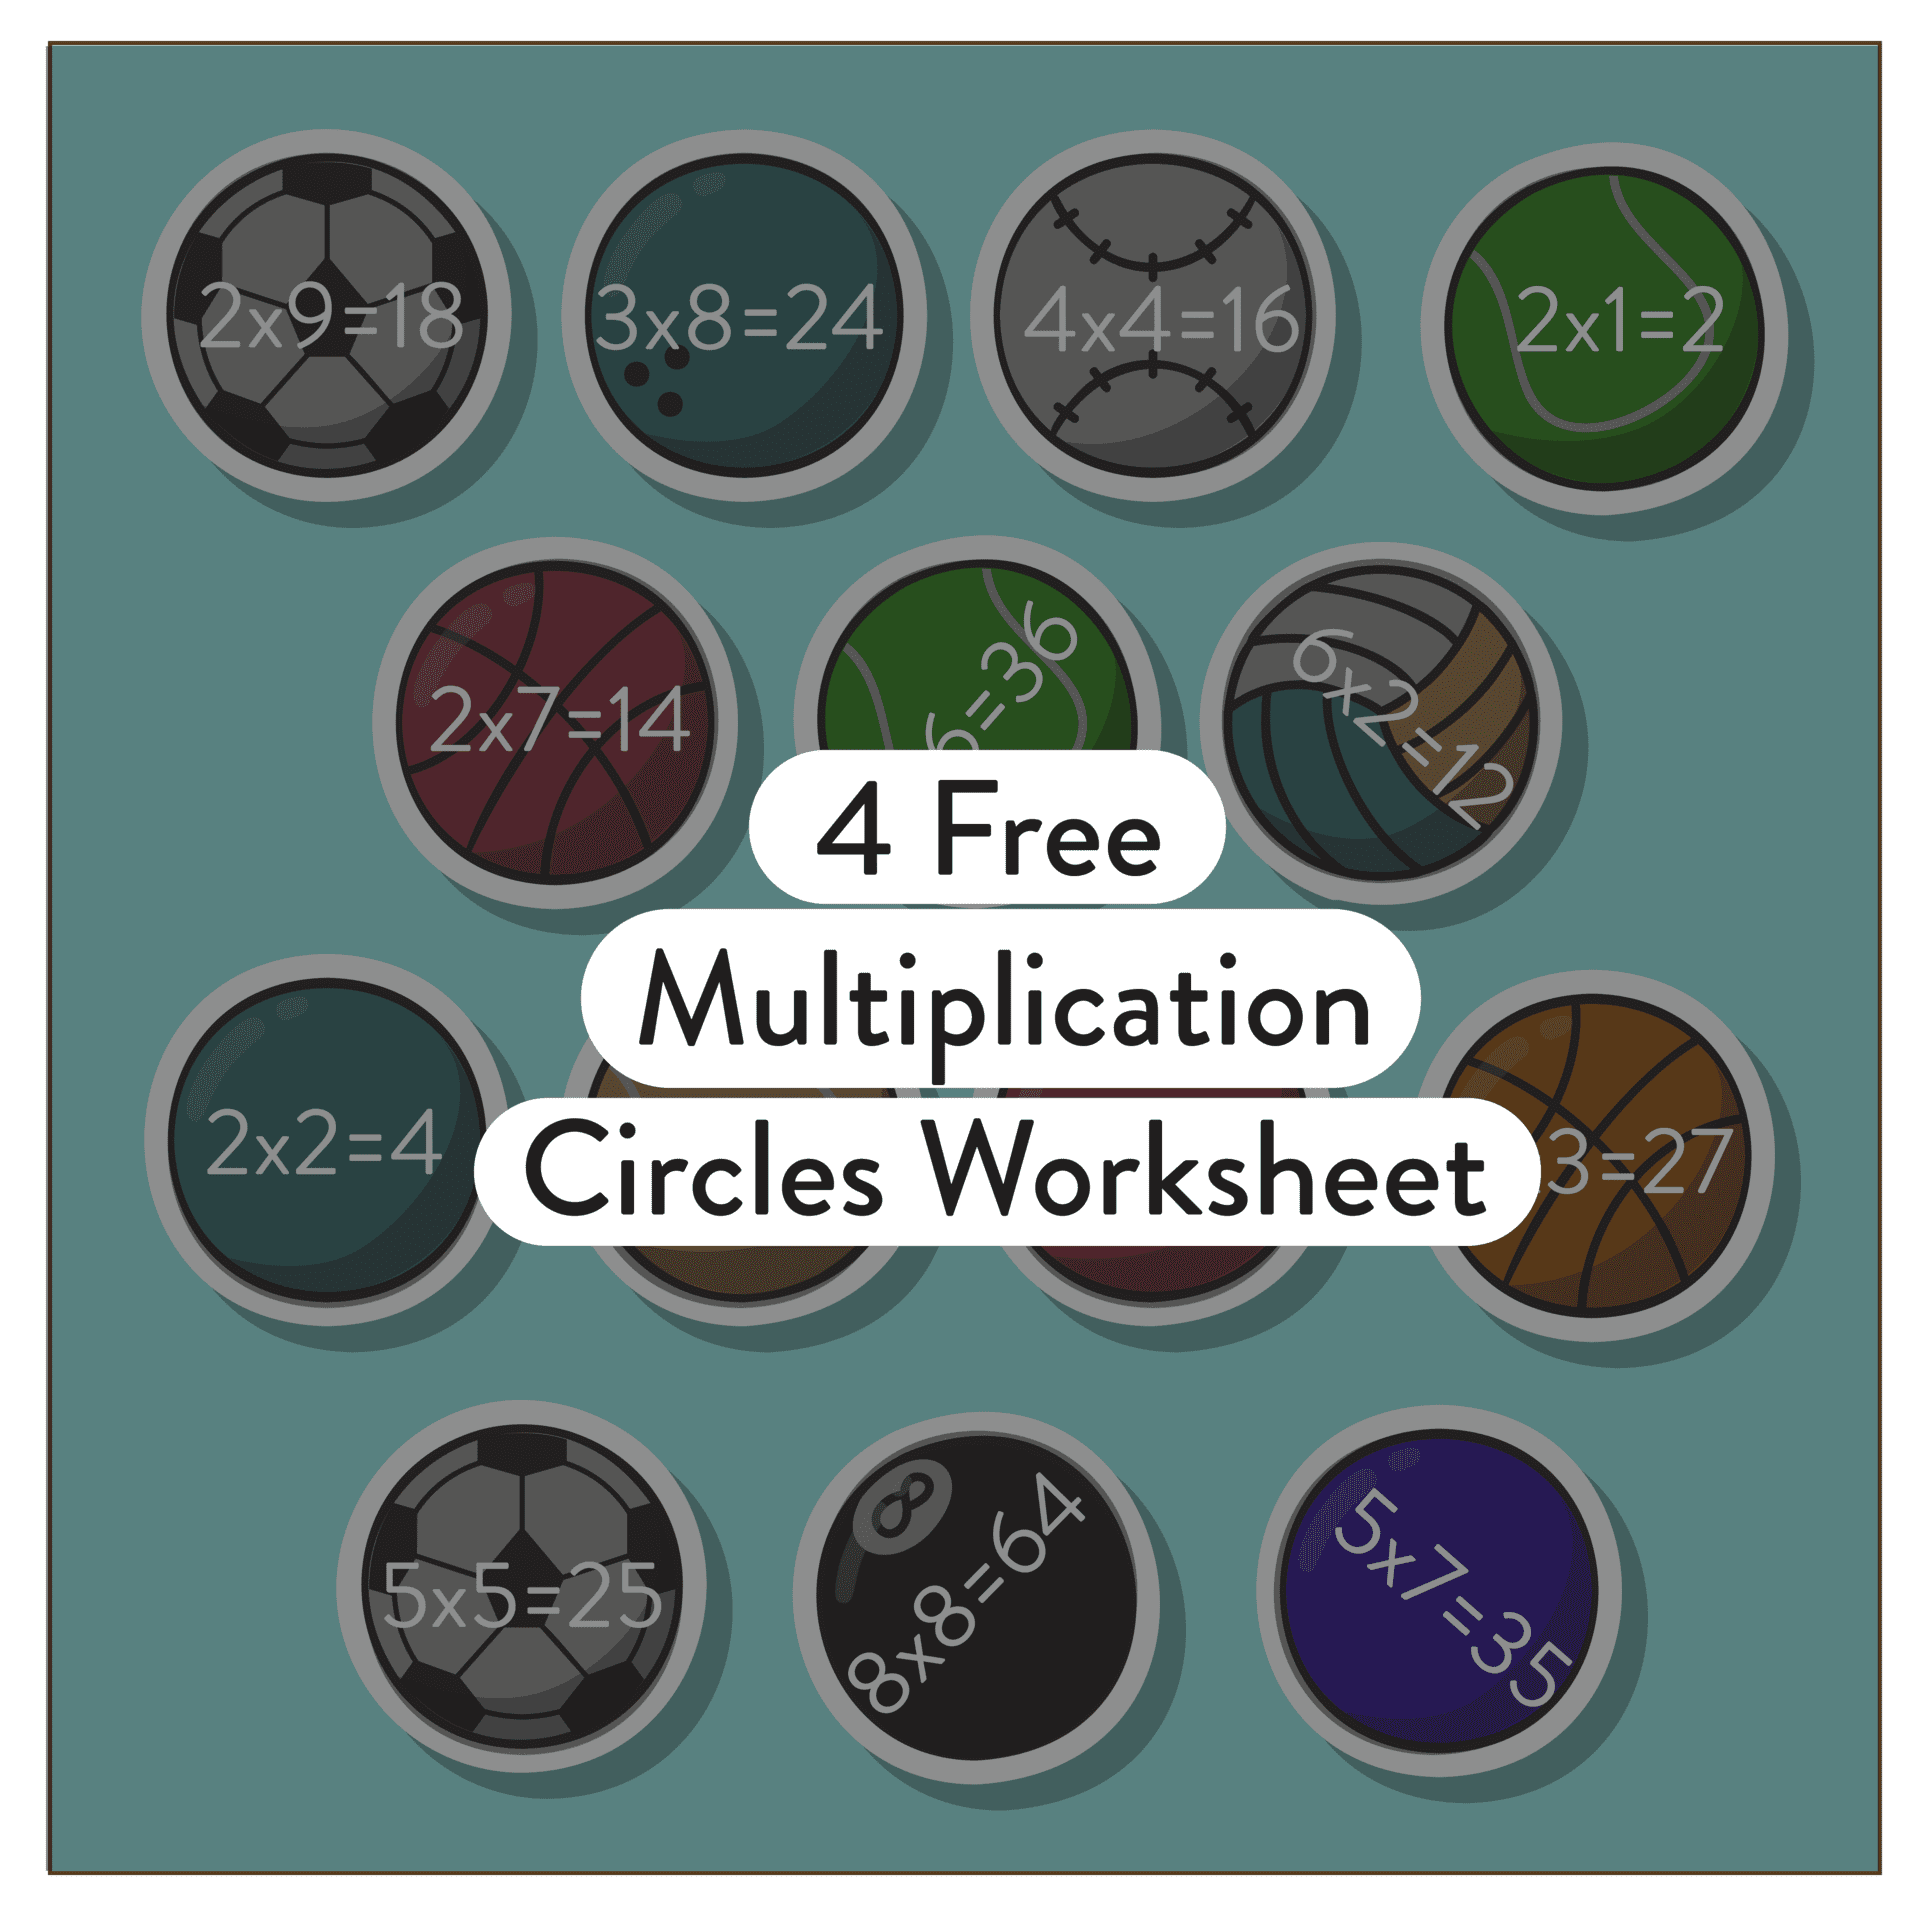 4 Free Multiplication Circles Worksheet